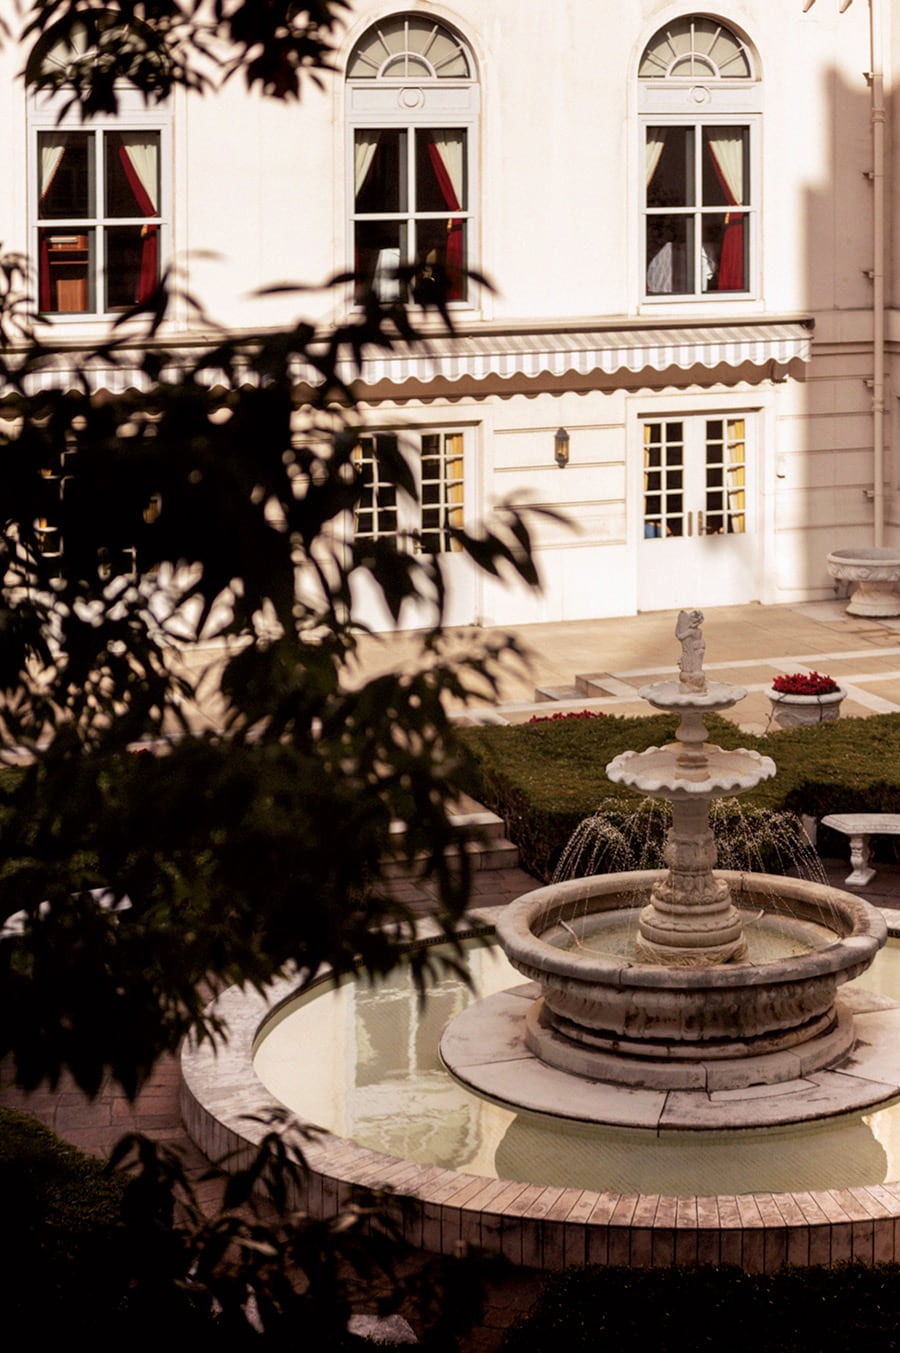 イタリア製の噴水がシンボルの中庭は、隠れ人気スポット。年間を通して日没からはイルミネーションで飾られる。